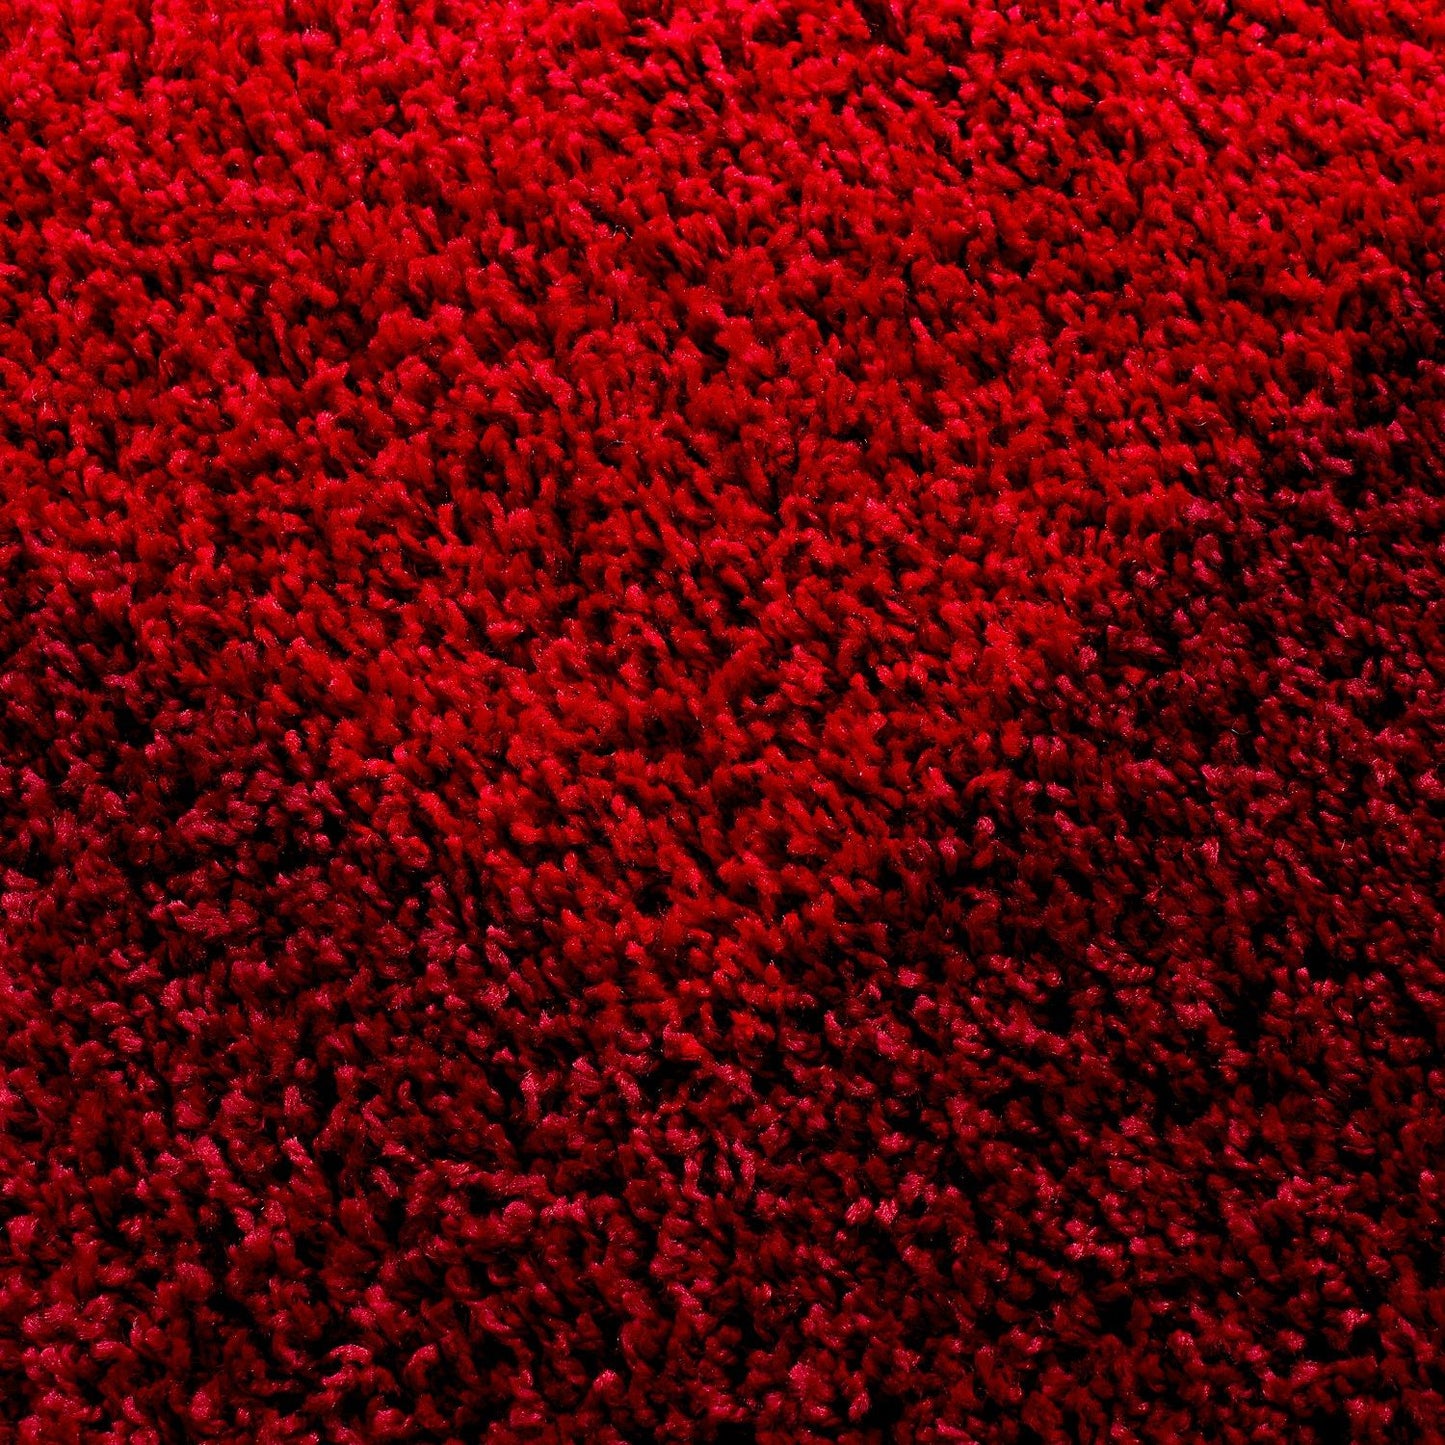 LIFE1503RED Tæppe (100 x 200) - Rød